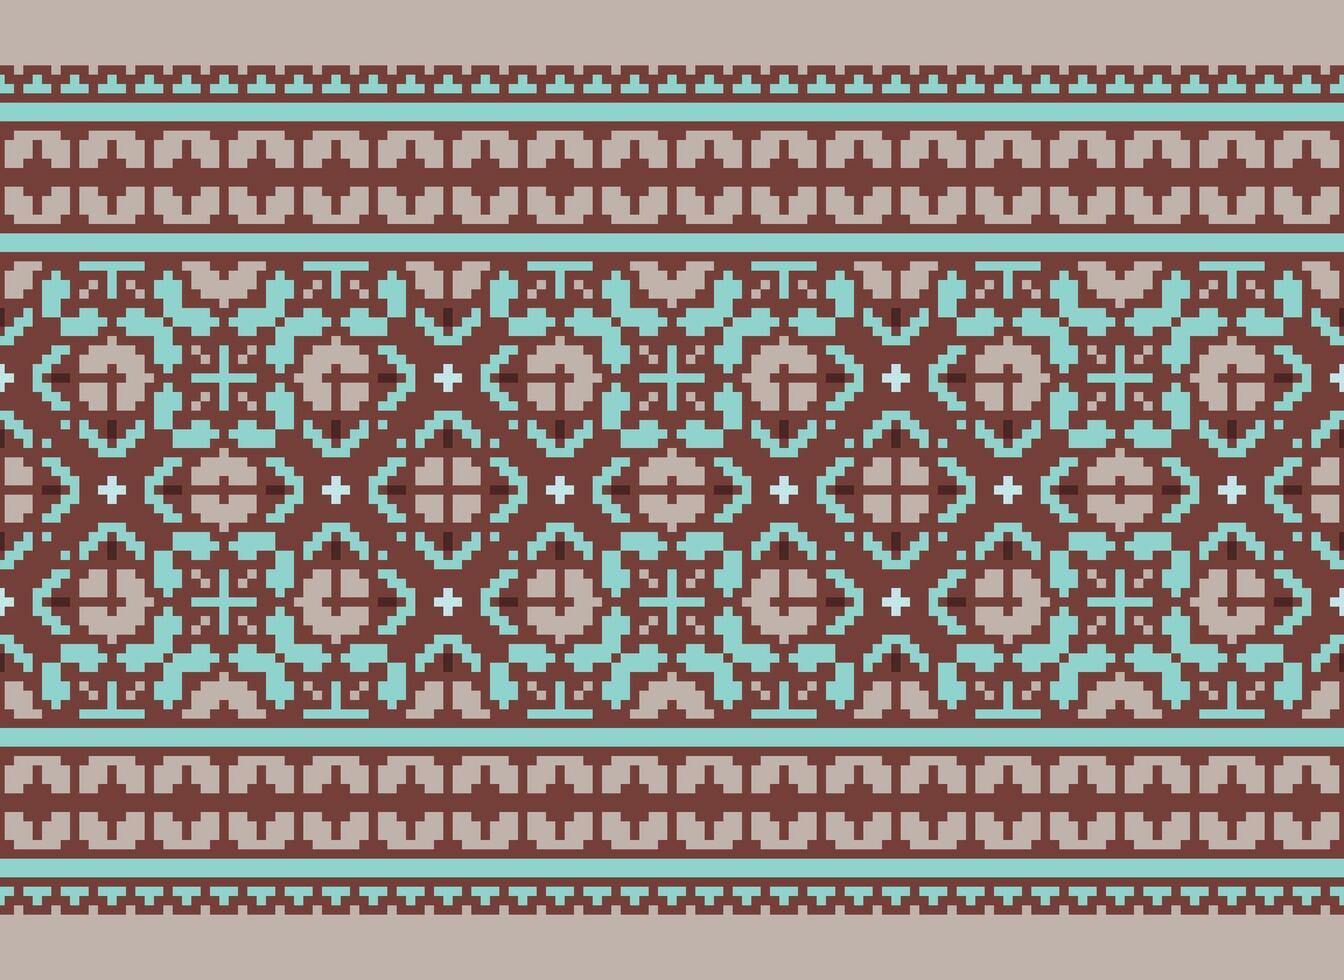 meetkundig patronen van modern elegant textuur. borders in de het formulier van een pixel ornament voor borduurwerk, keramisch tegels en textiel interieur ontwerp elementen. naadloos illustratie vector